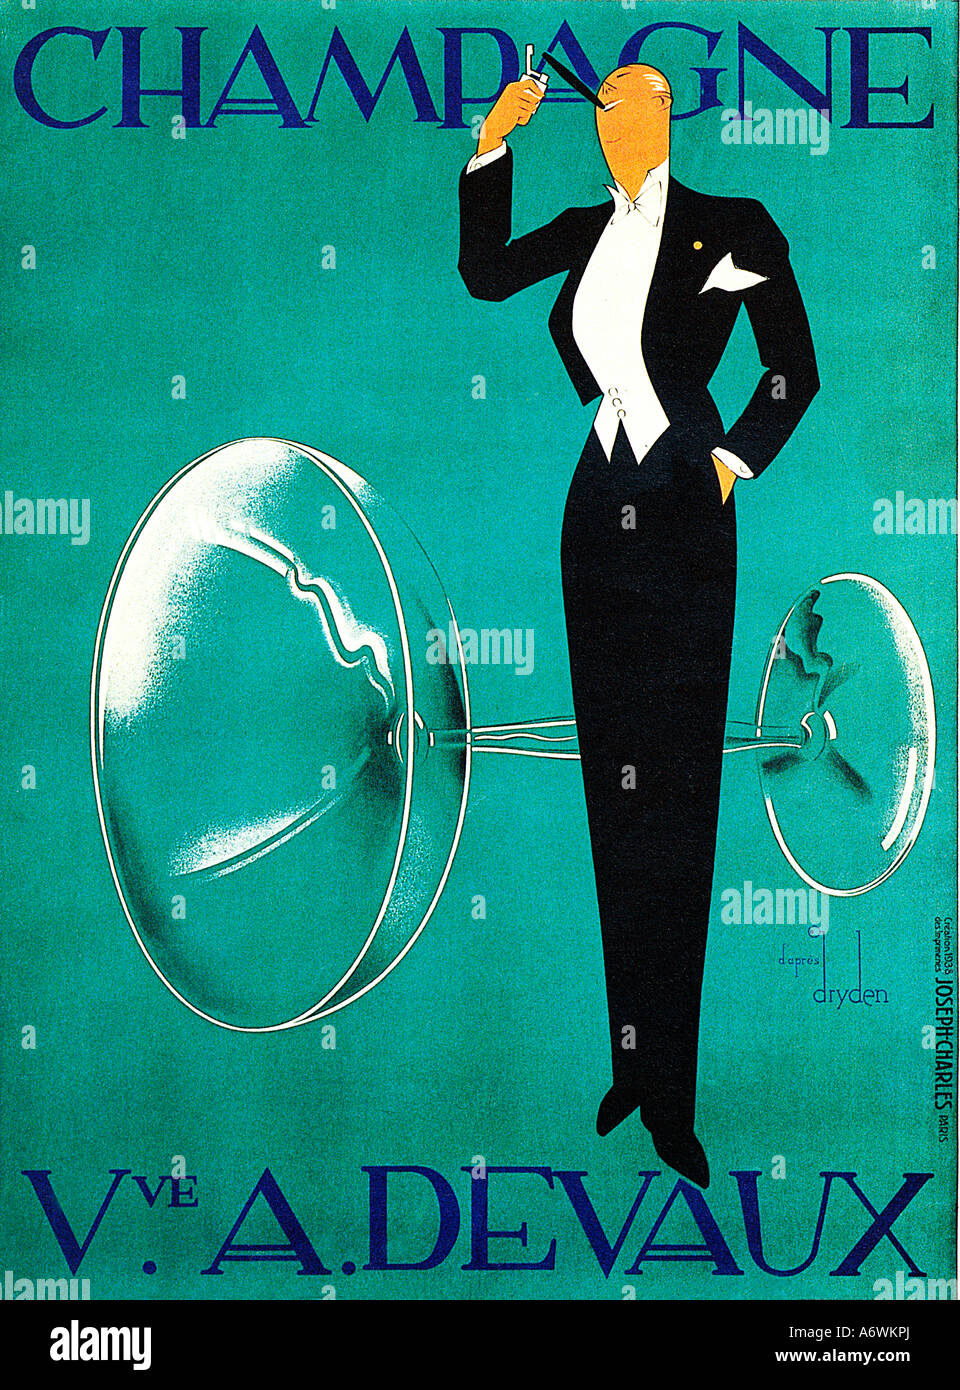 Champagne Devaux il famoso 1930s Art Deco poster per la casa francese da Ernst Dryden Foto Stock